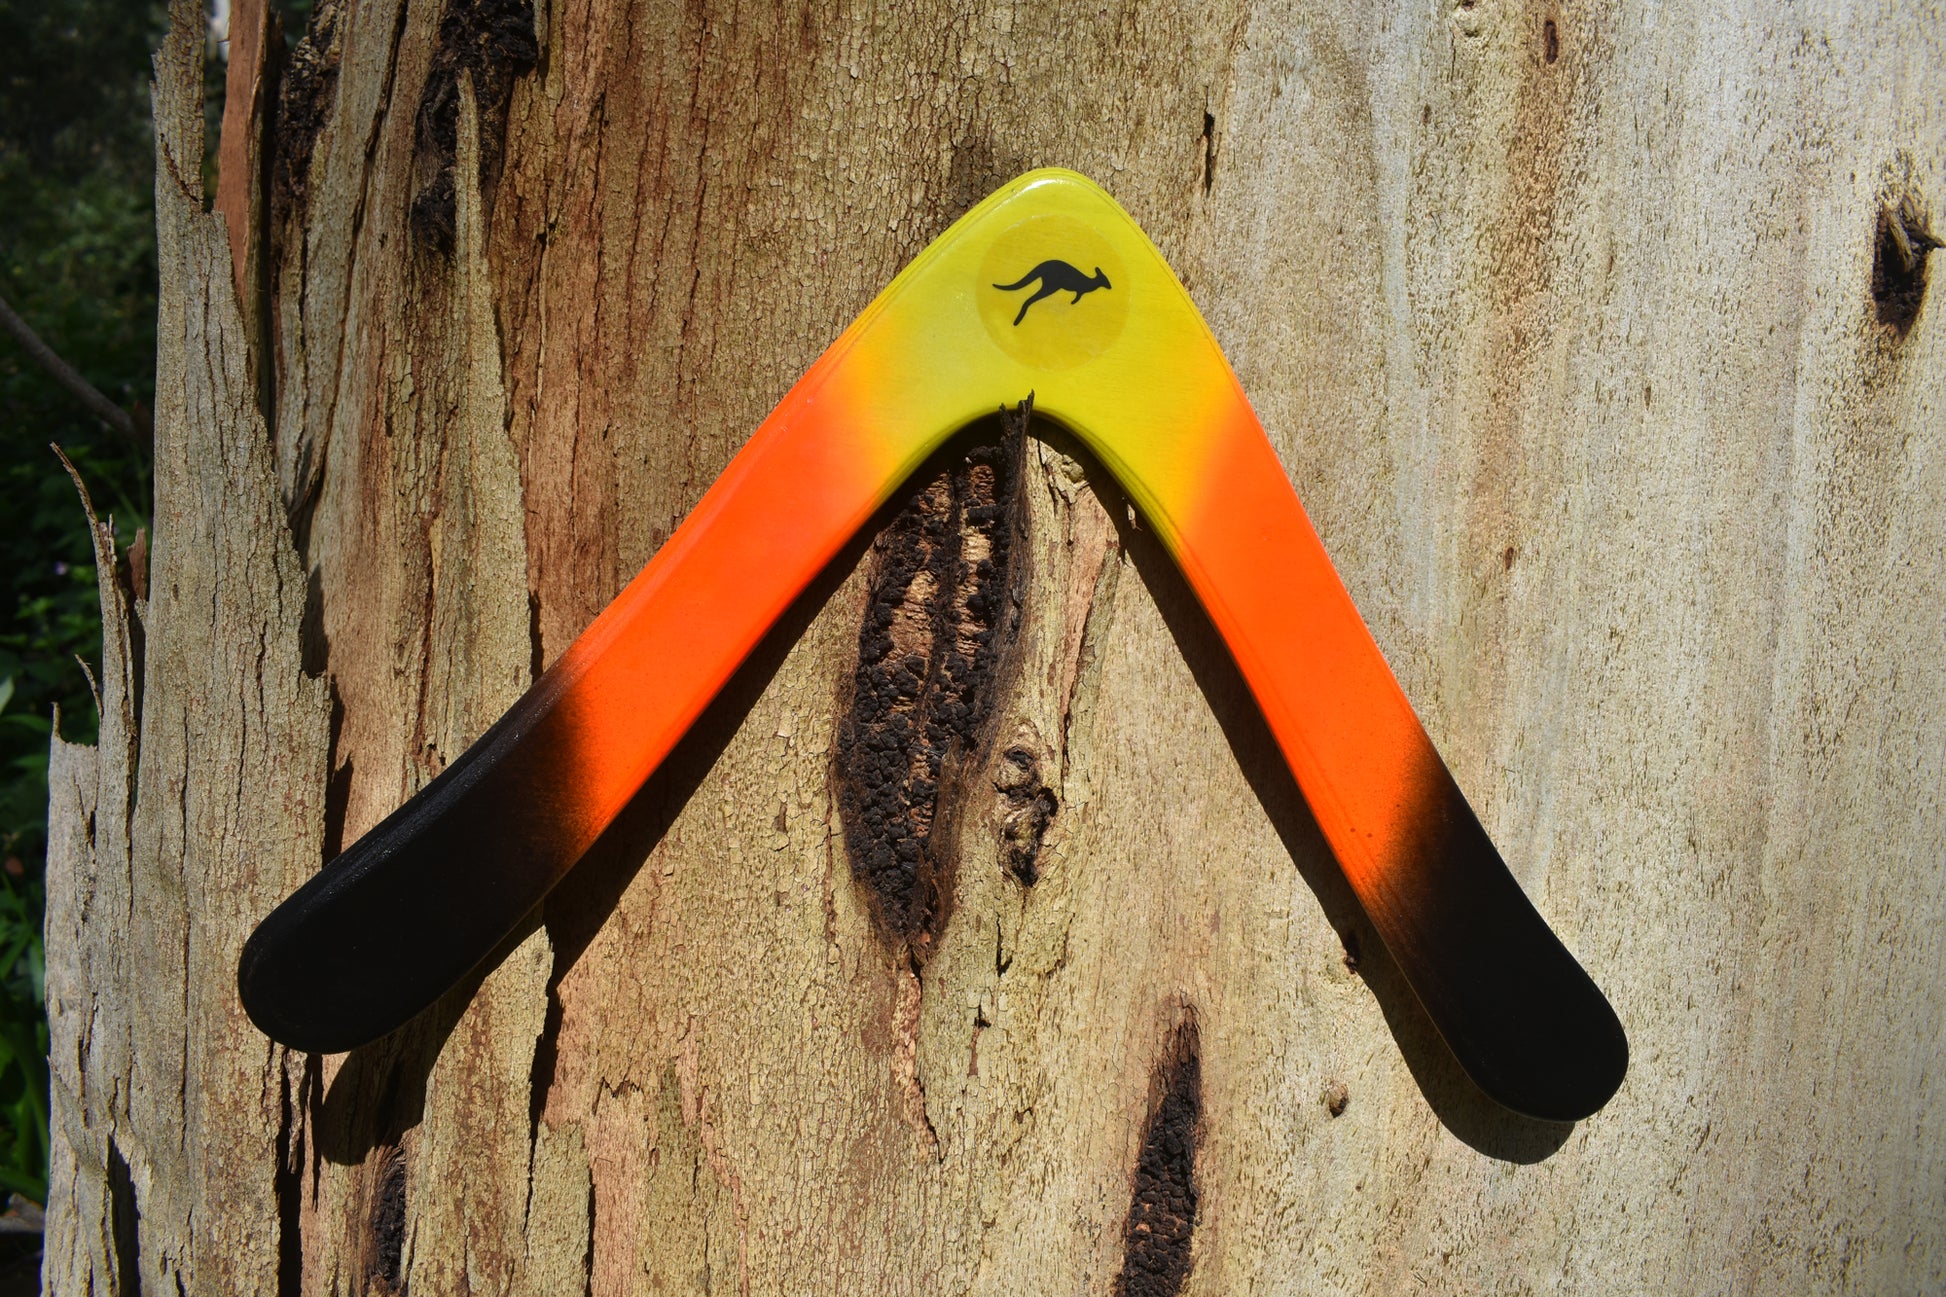 Aussie Arrow with Australian gum tree